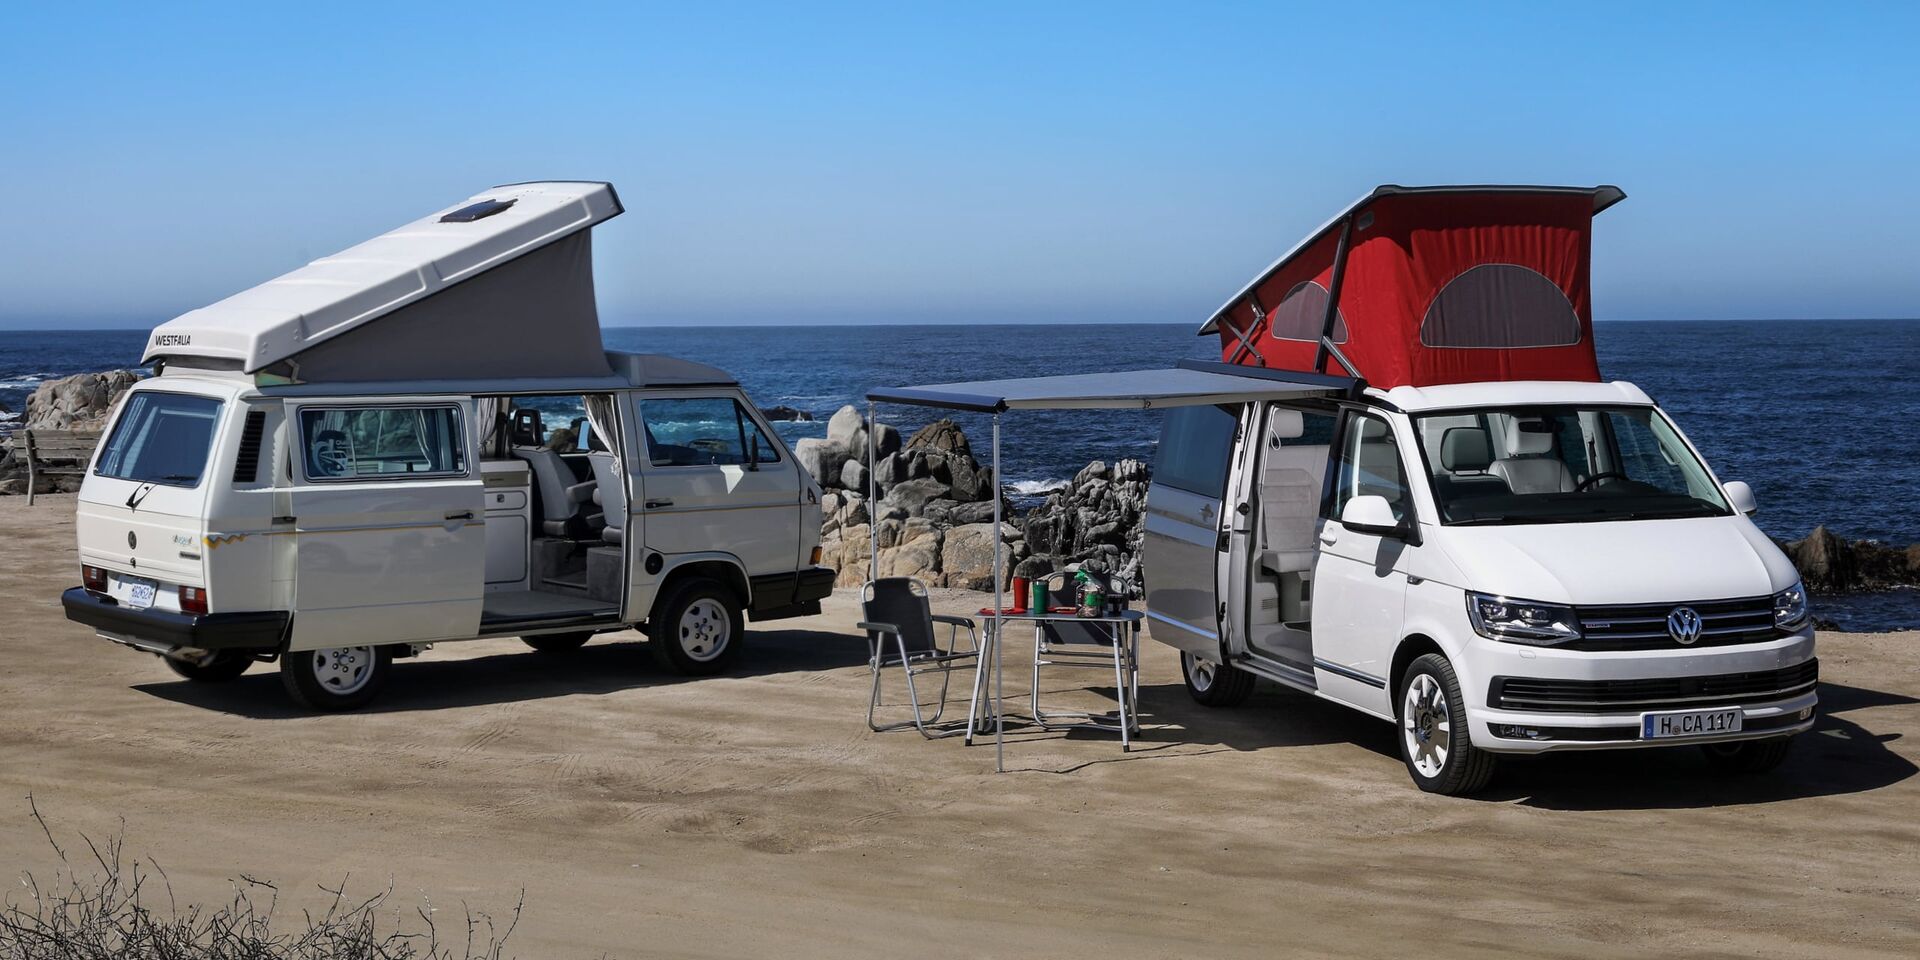 Duas California da Volkswagen Veículos Comerciais com tejadilho elevado numa praia escarpada. O toldo do veículo à direita está estendido. Algum do equipamento de campismo encontra-se sob este.